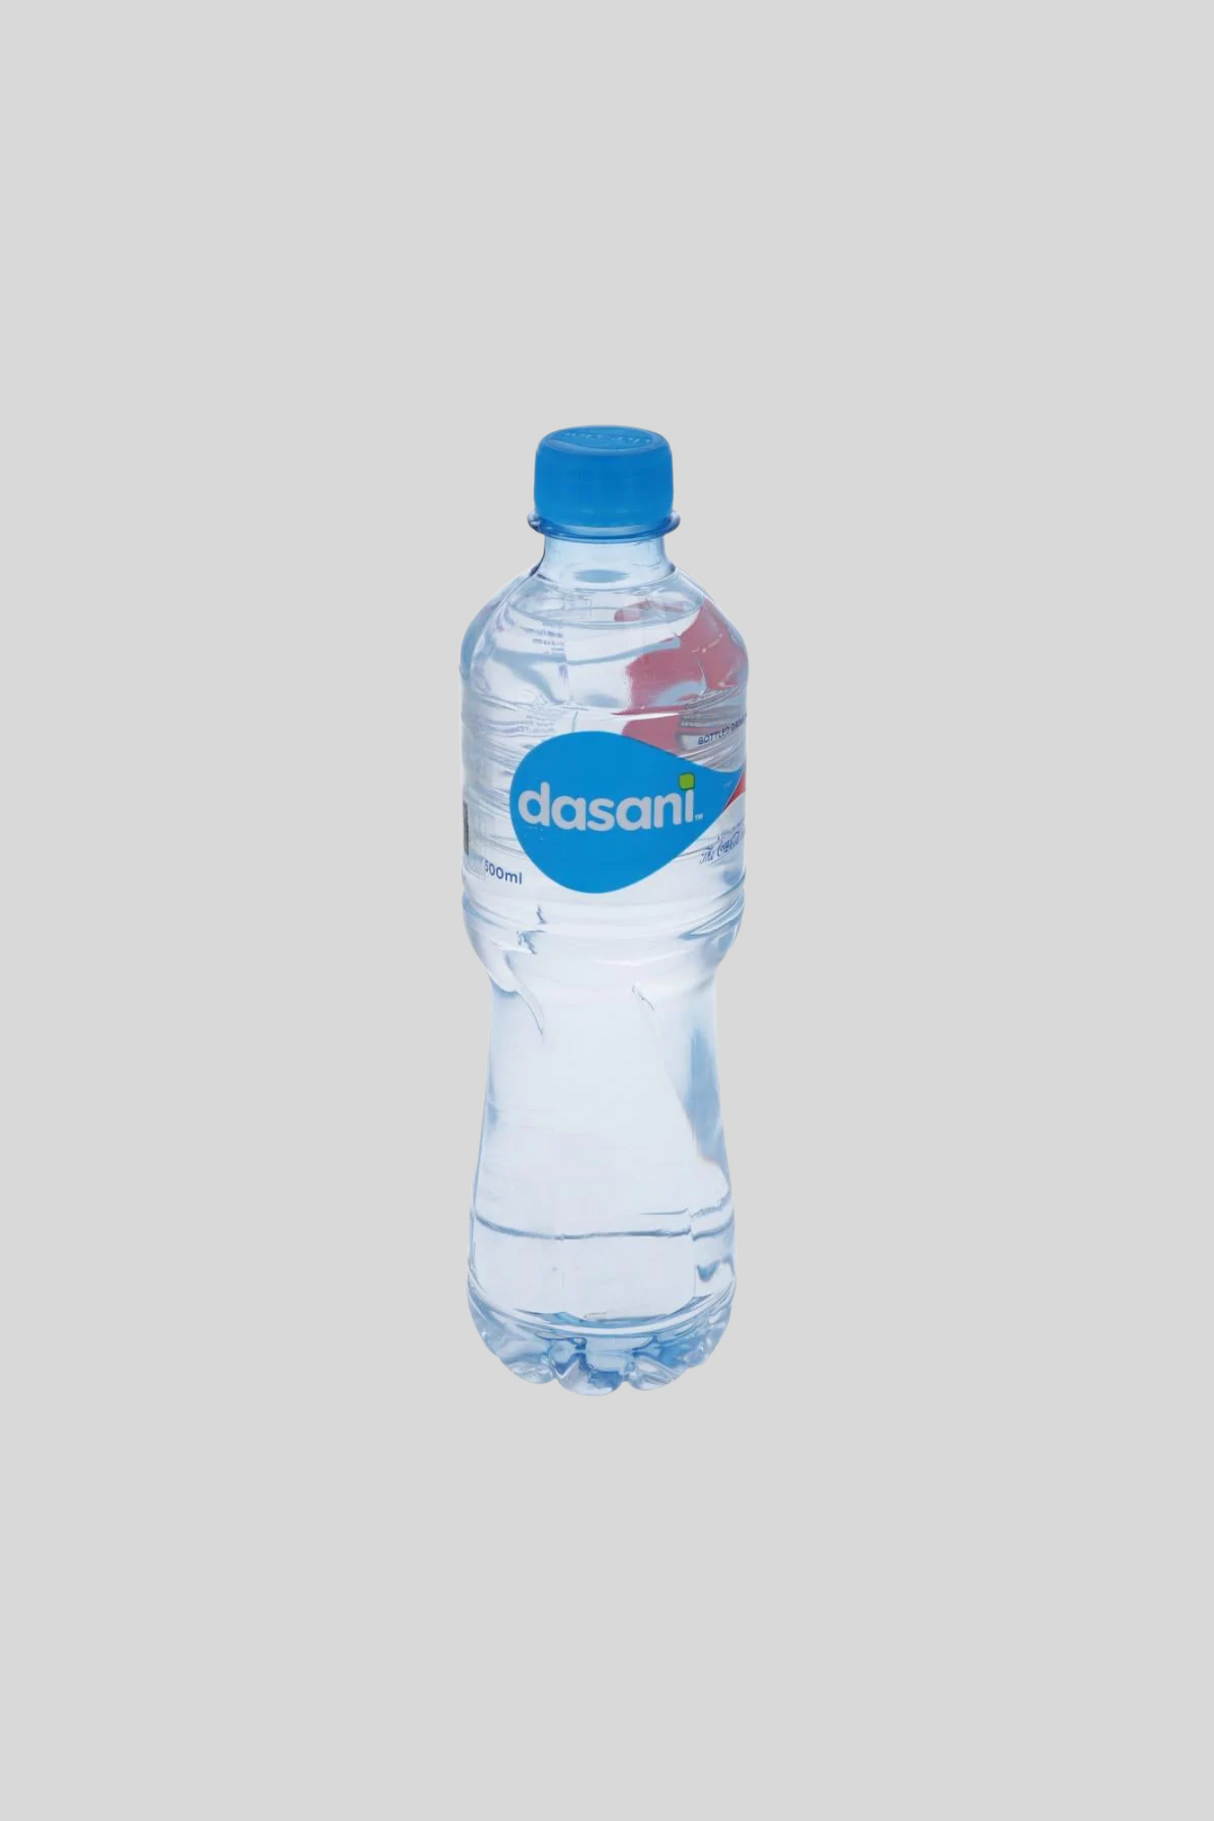 dasani mineral water 500ml